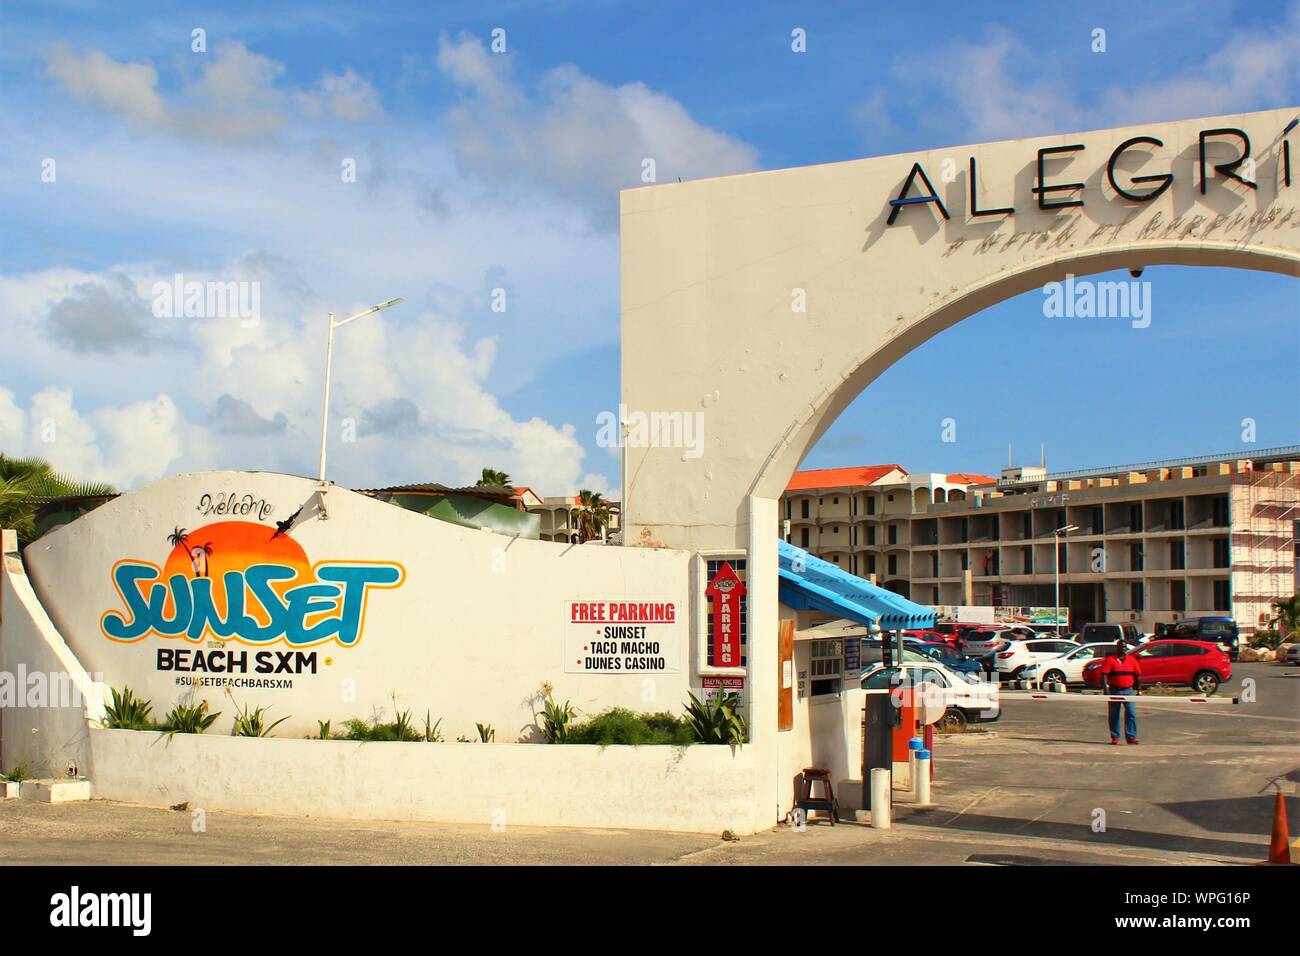 Entrée du parking pour le 'Sunset Beach' SXM beach bar, populaire auprès des touristes et passionnés d'avion, en raison de sa situation par l'aéroport SXM, St Maarten. Banque D'Images